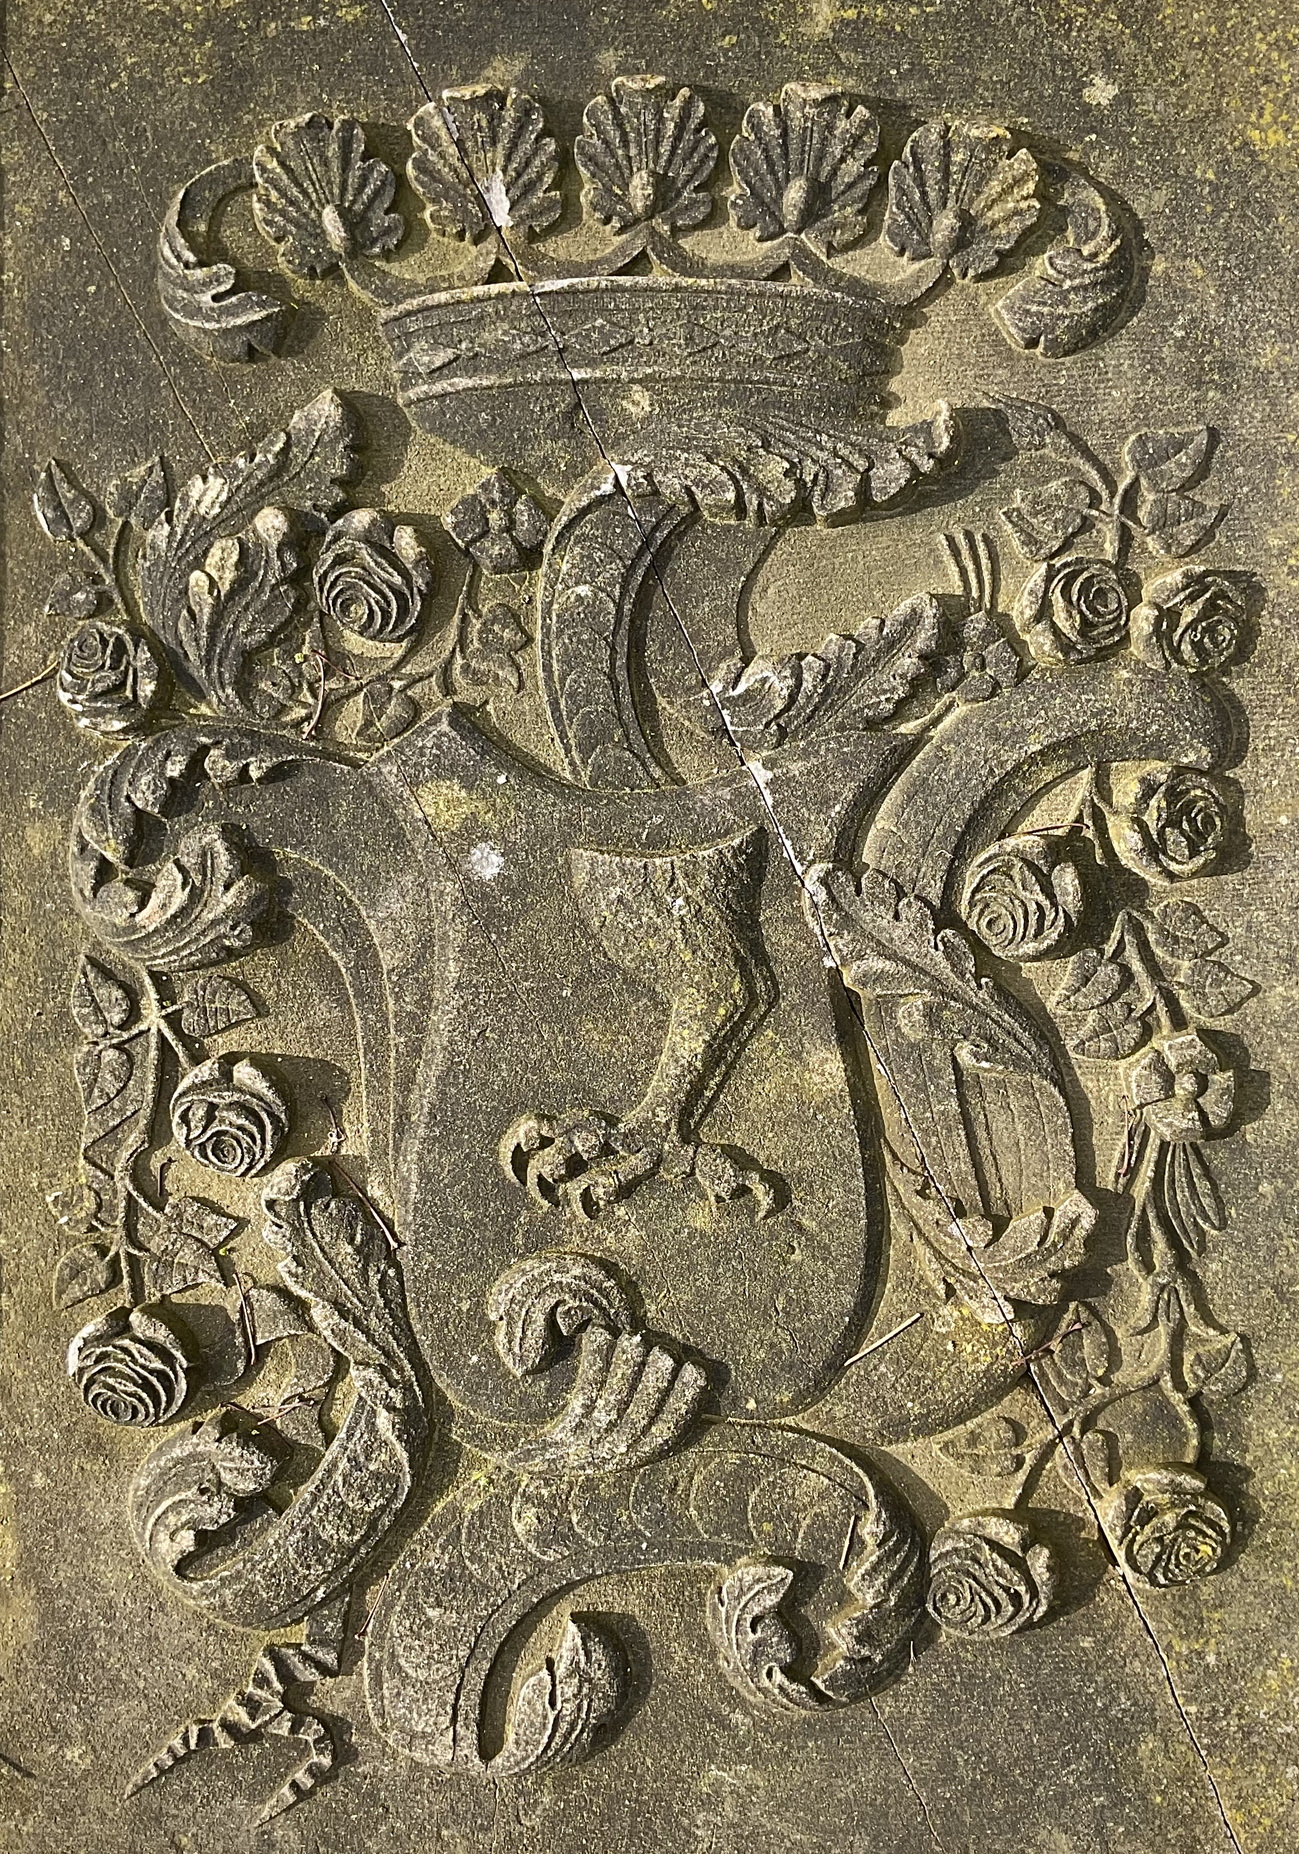 Het wapen van Coenraad Hendrik Piccardt op zijn grafsteen. (Officieel) in blauw een gouden adelaarspoot. Helmteken: een vlucht, waartussen een adelaarspoot. Dekkleden: blauw en goud. Foto: (c)Jur Kuipers.